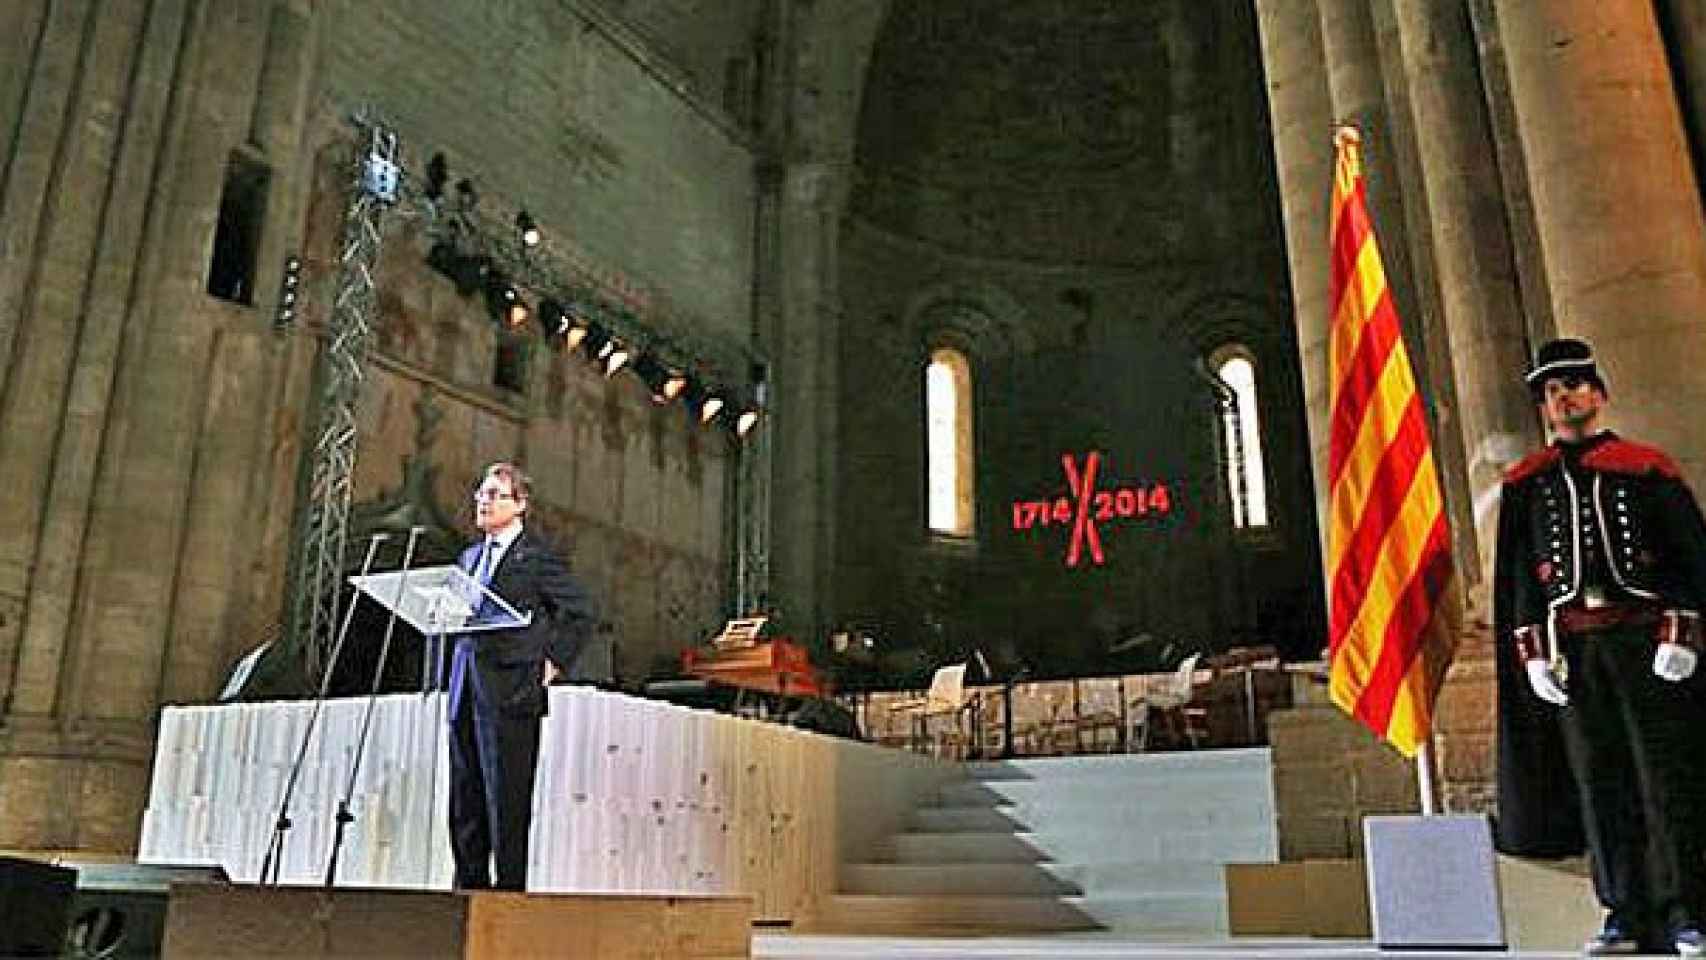 El presidente de la Generalidad, Artur Mas, durante el acto de inauguración de la conmemoración del tricentenario de 1714